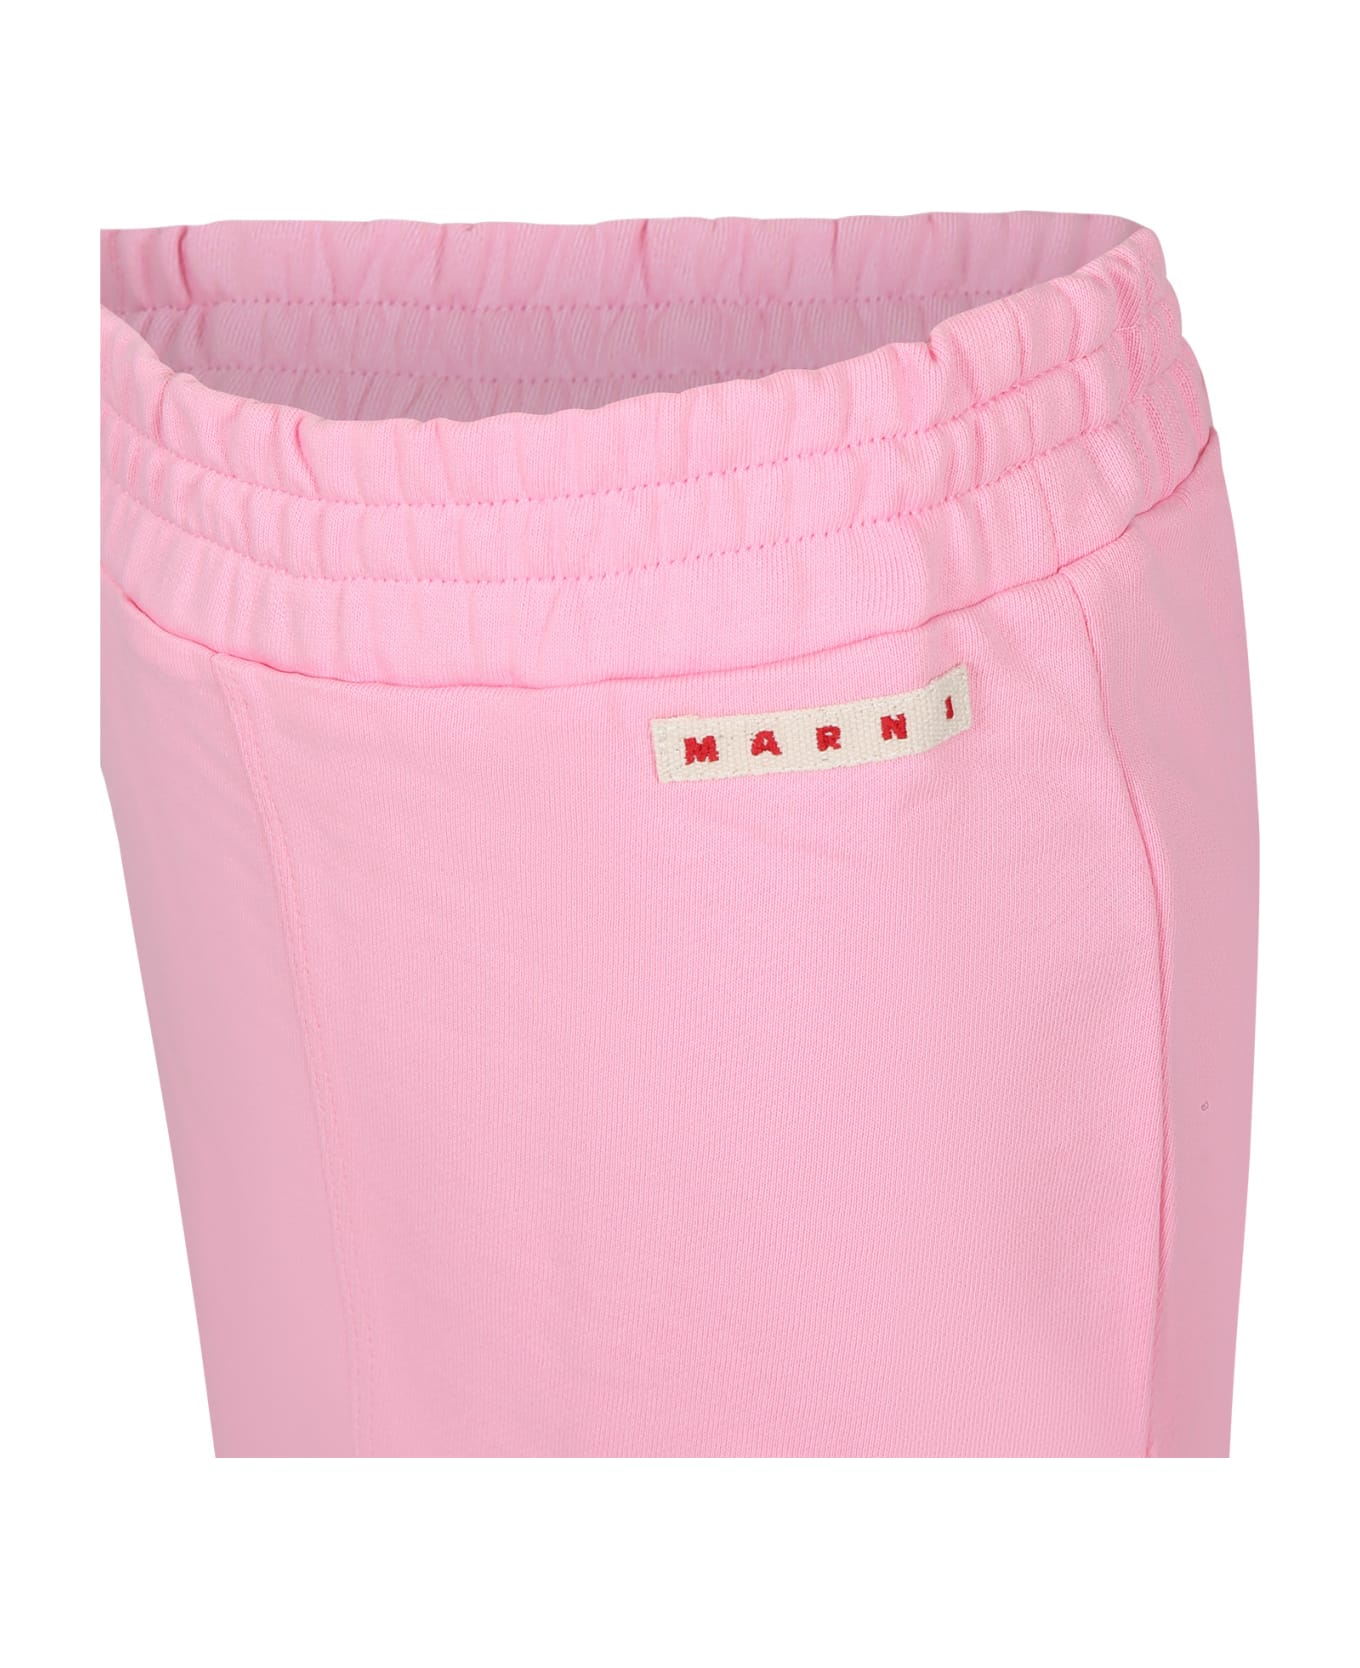 Marni Pink Skirt For Girl With Logo - Pink